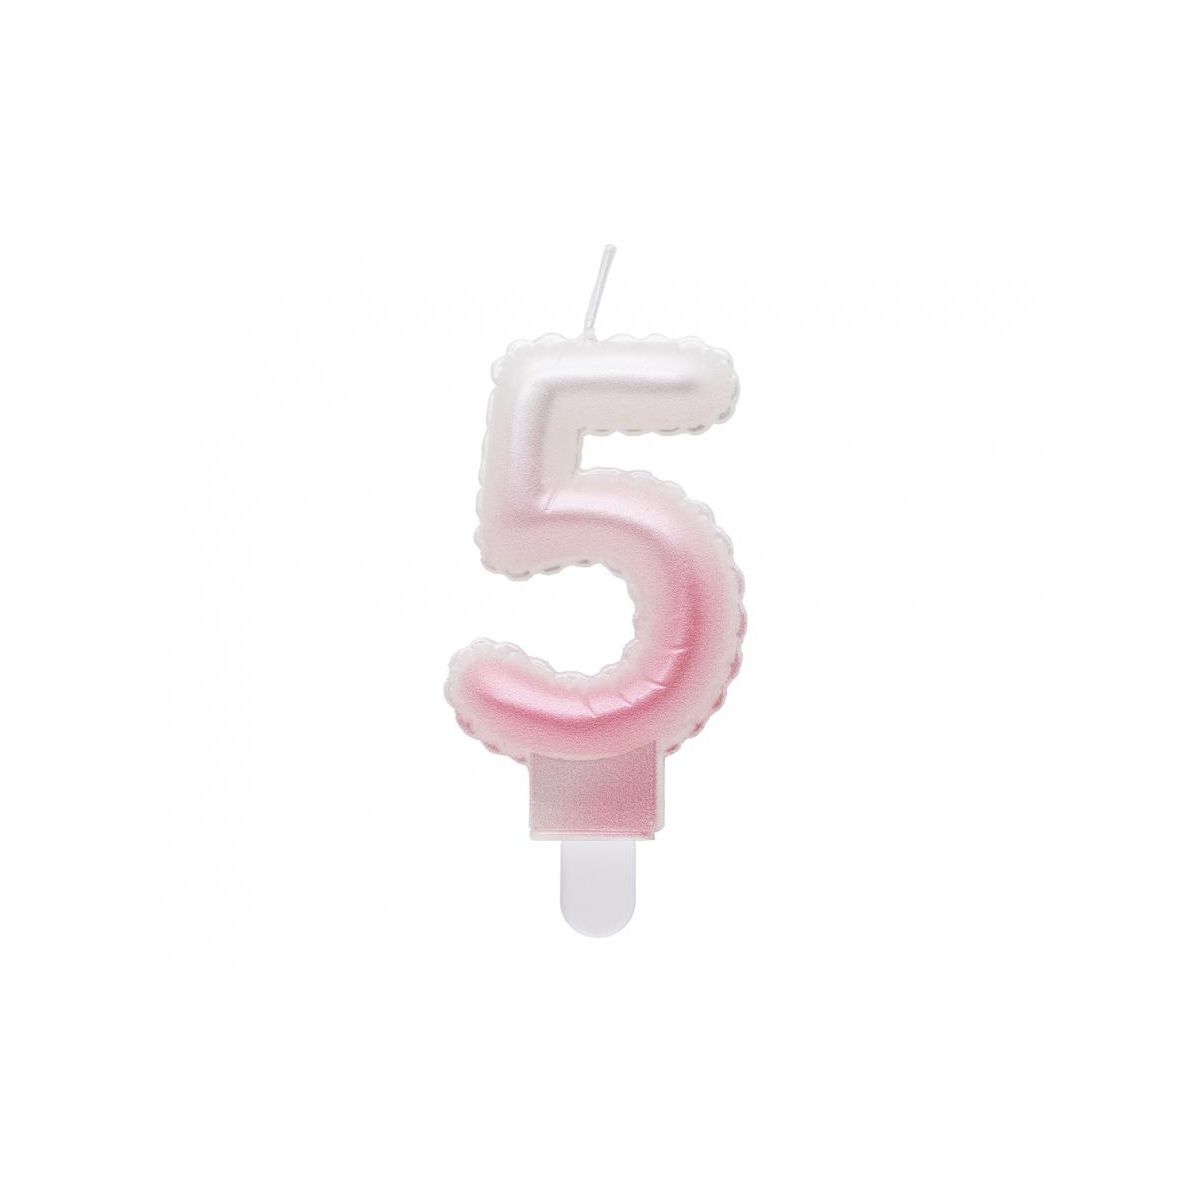 Świeczka urodzinowa cyferka 5, ombre, perłowa biało-różowa, 7 cm Godan (SF-PBR5)